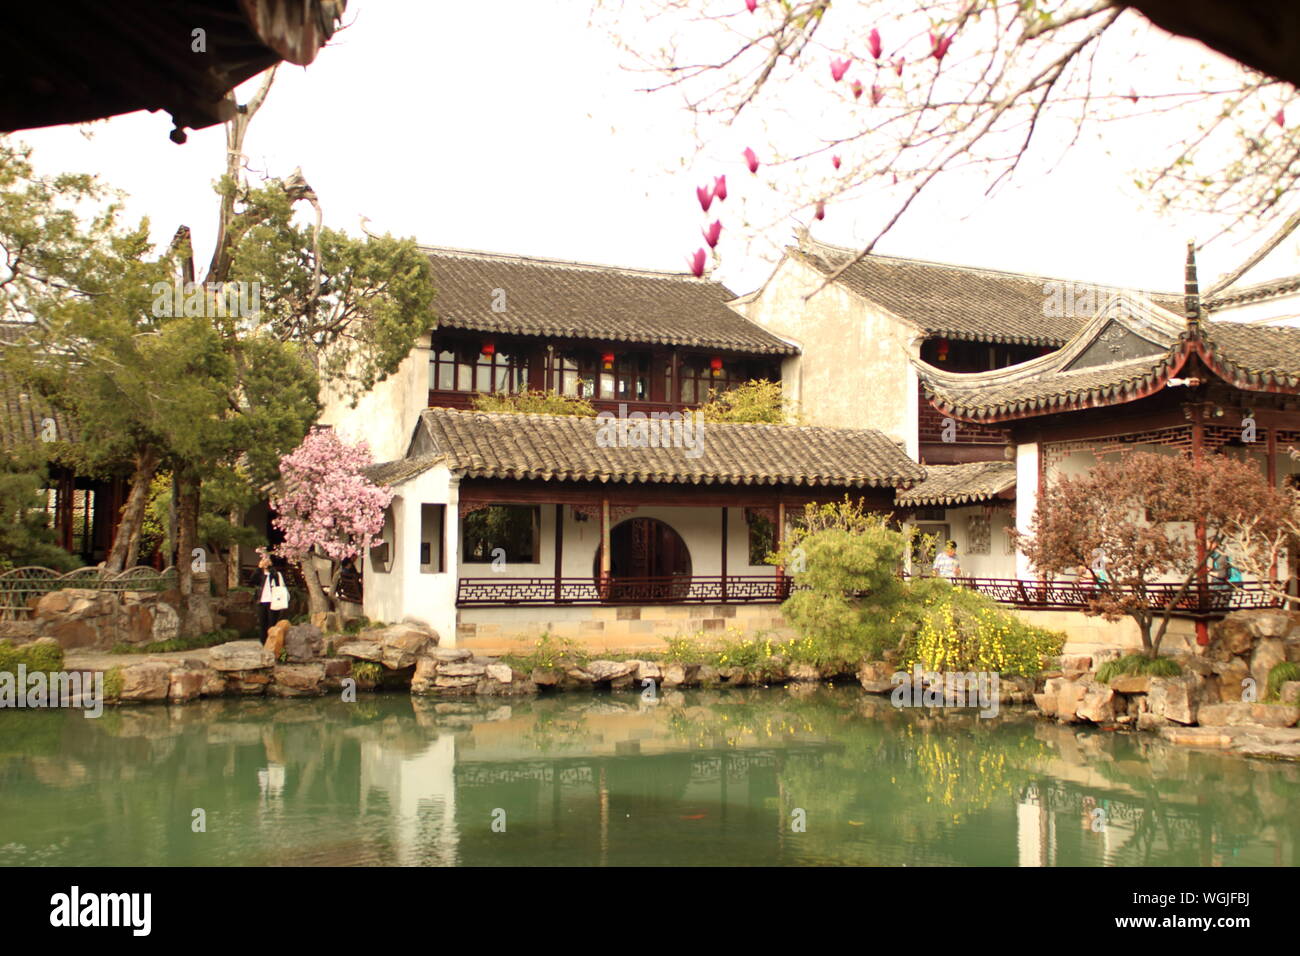 Jardin del maestro de Redes, China. Asia Stock Photo